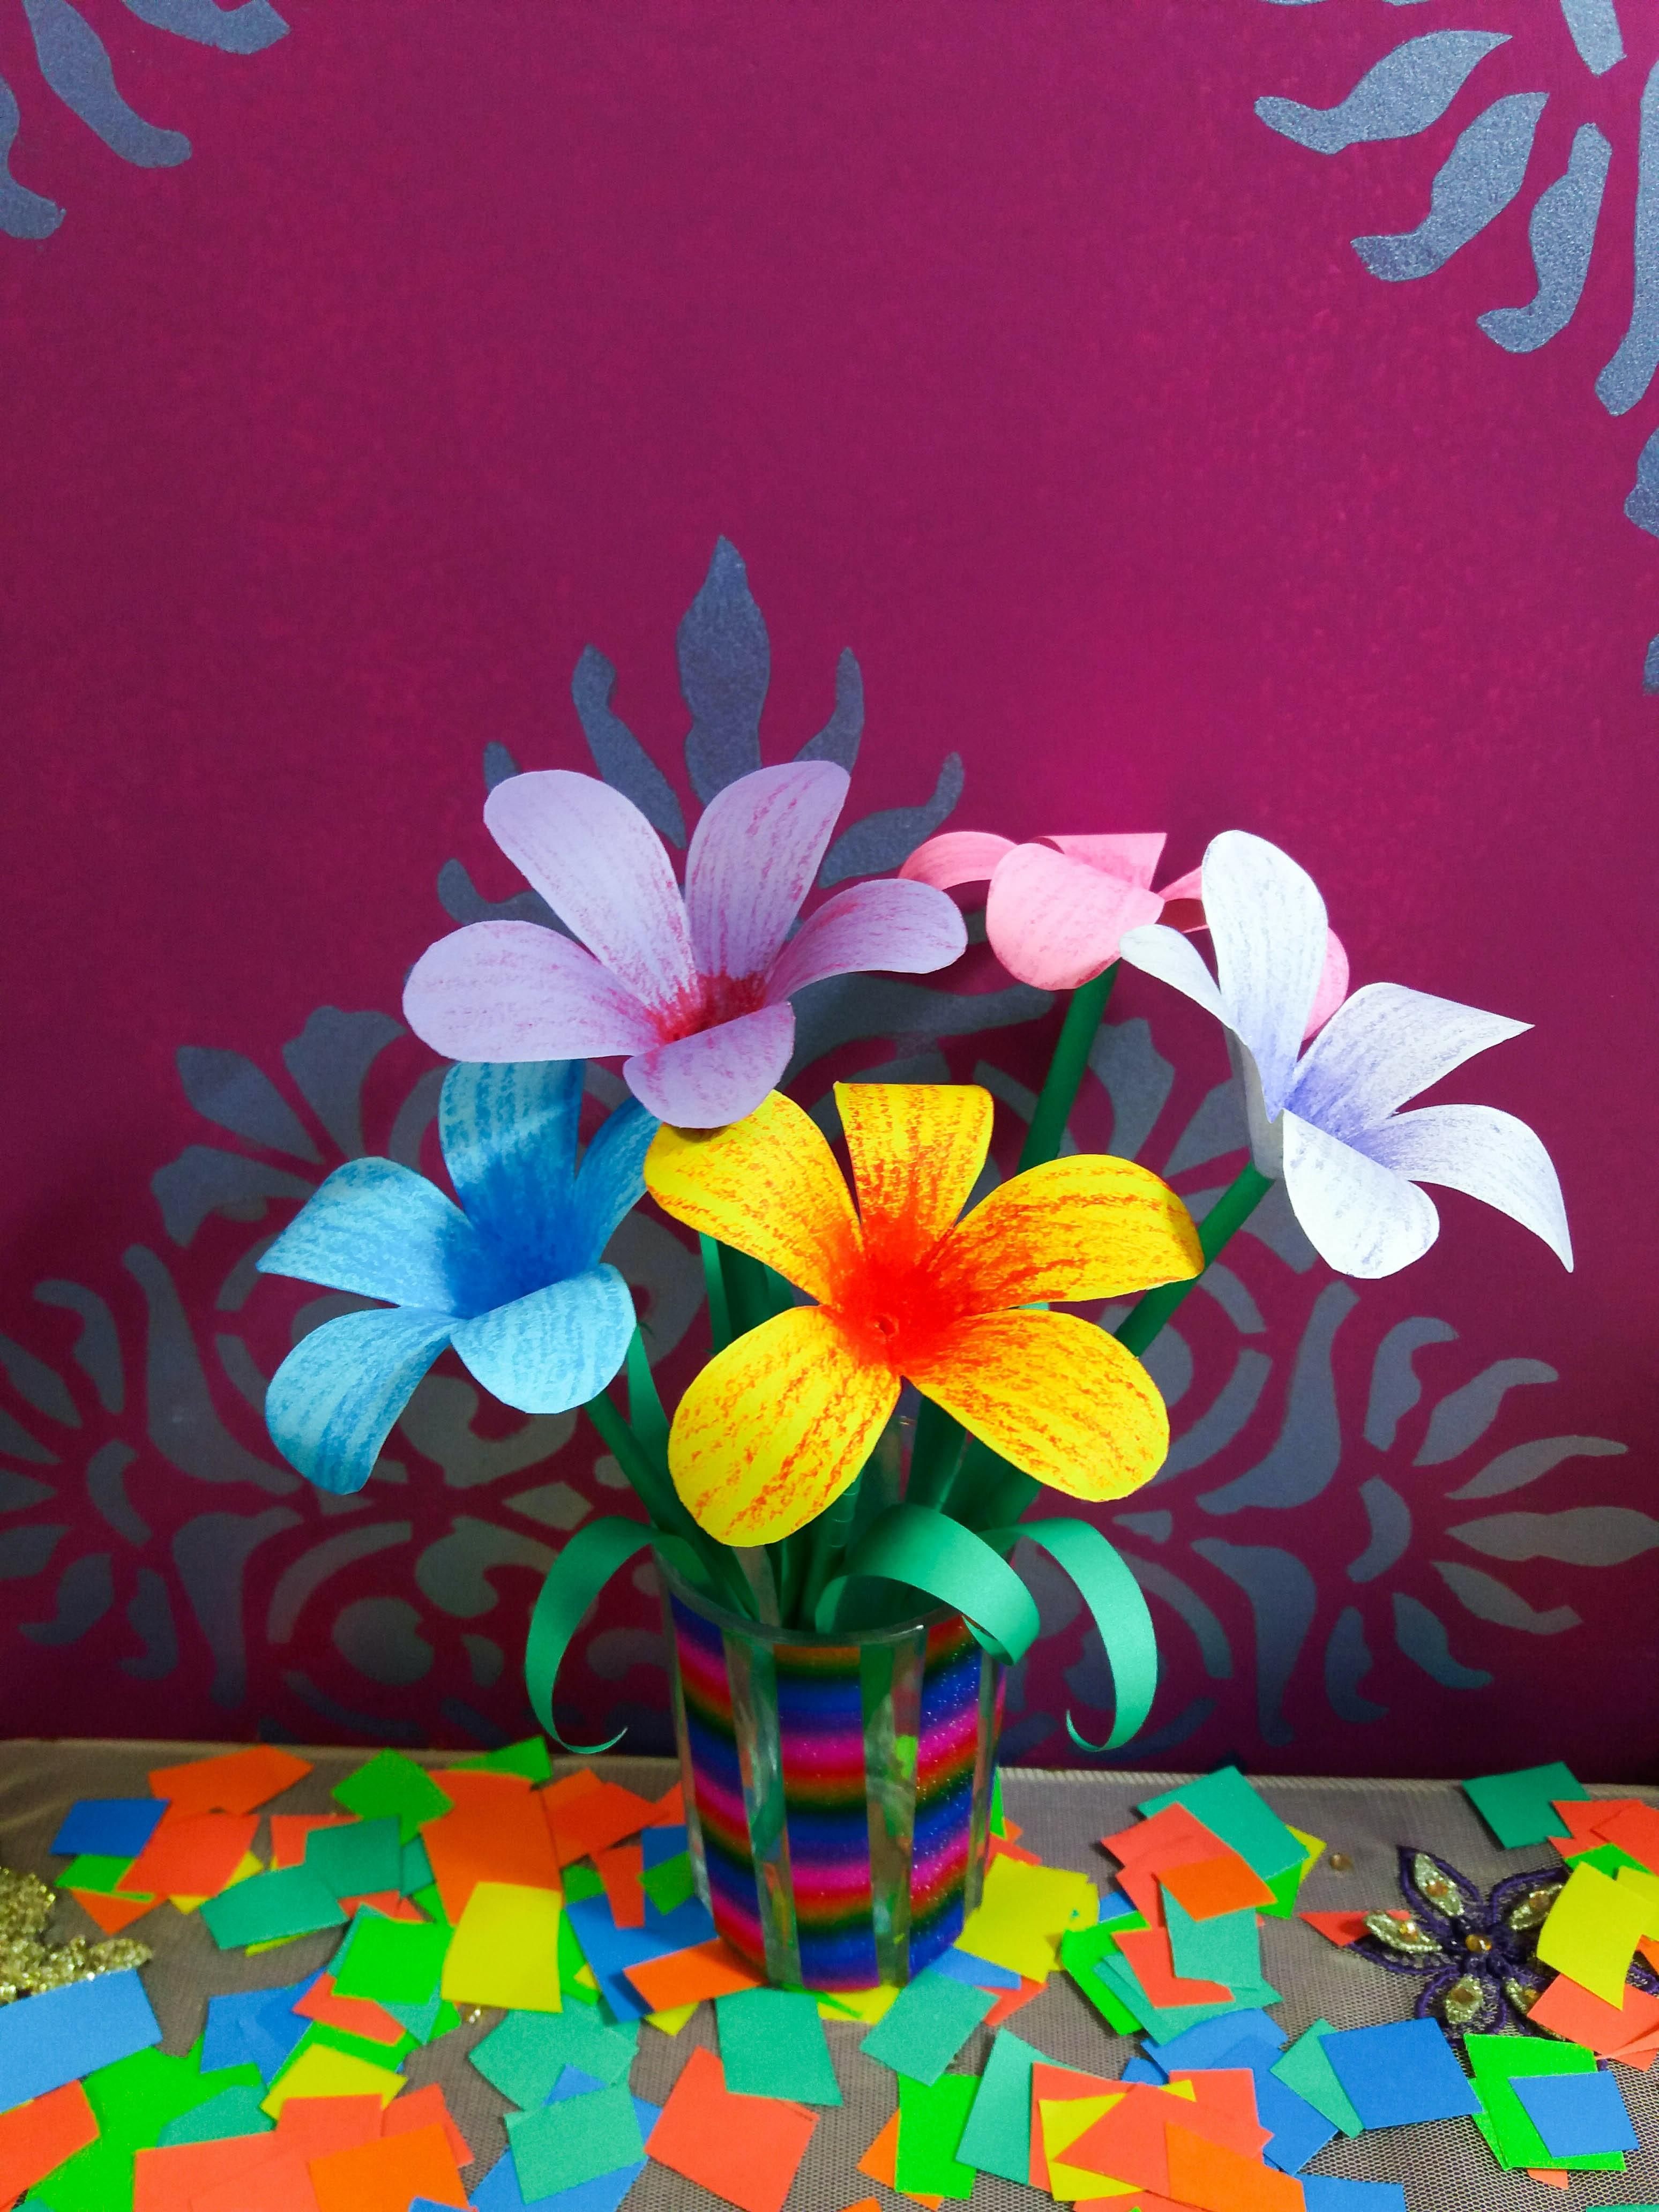 Креативим вместе с детьми: как создать интересные цветы из цветной бумаги - Идеи